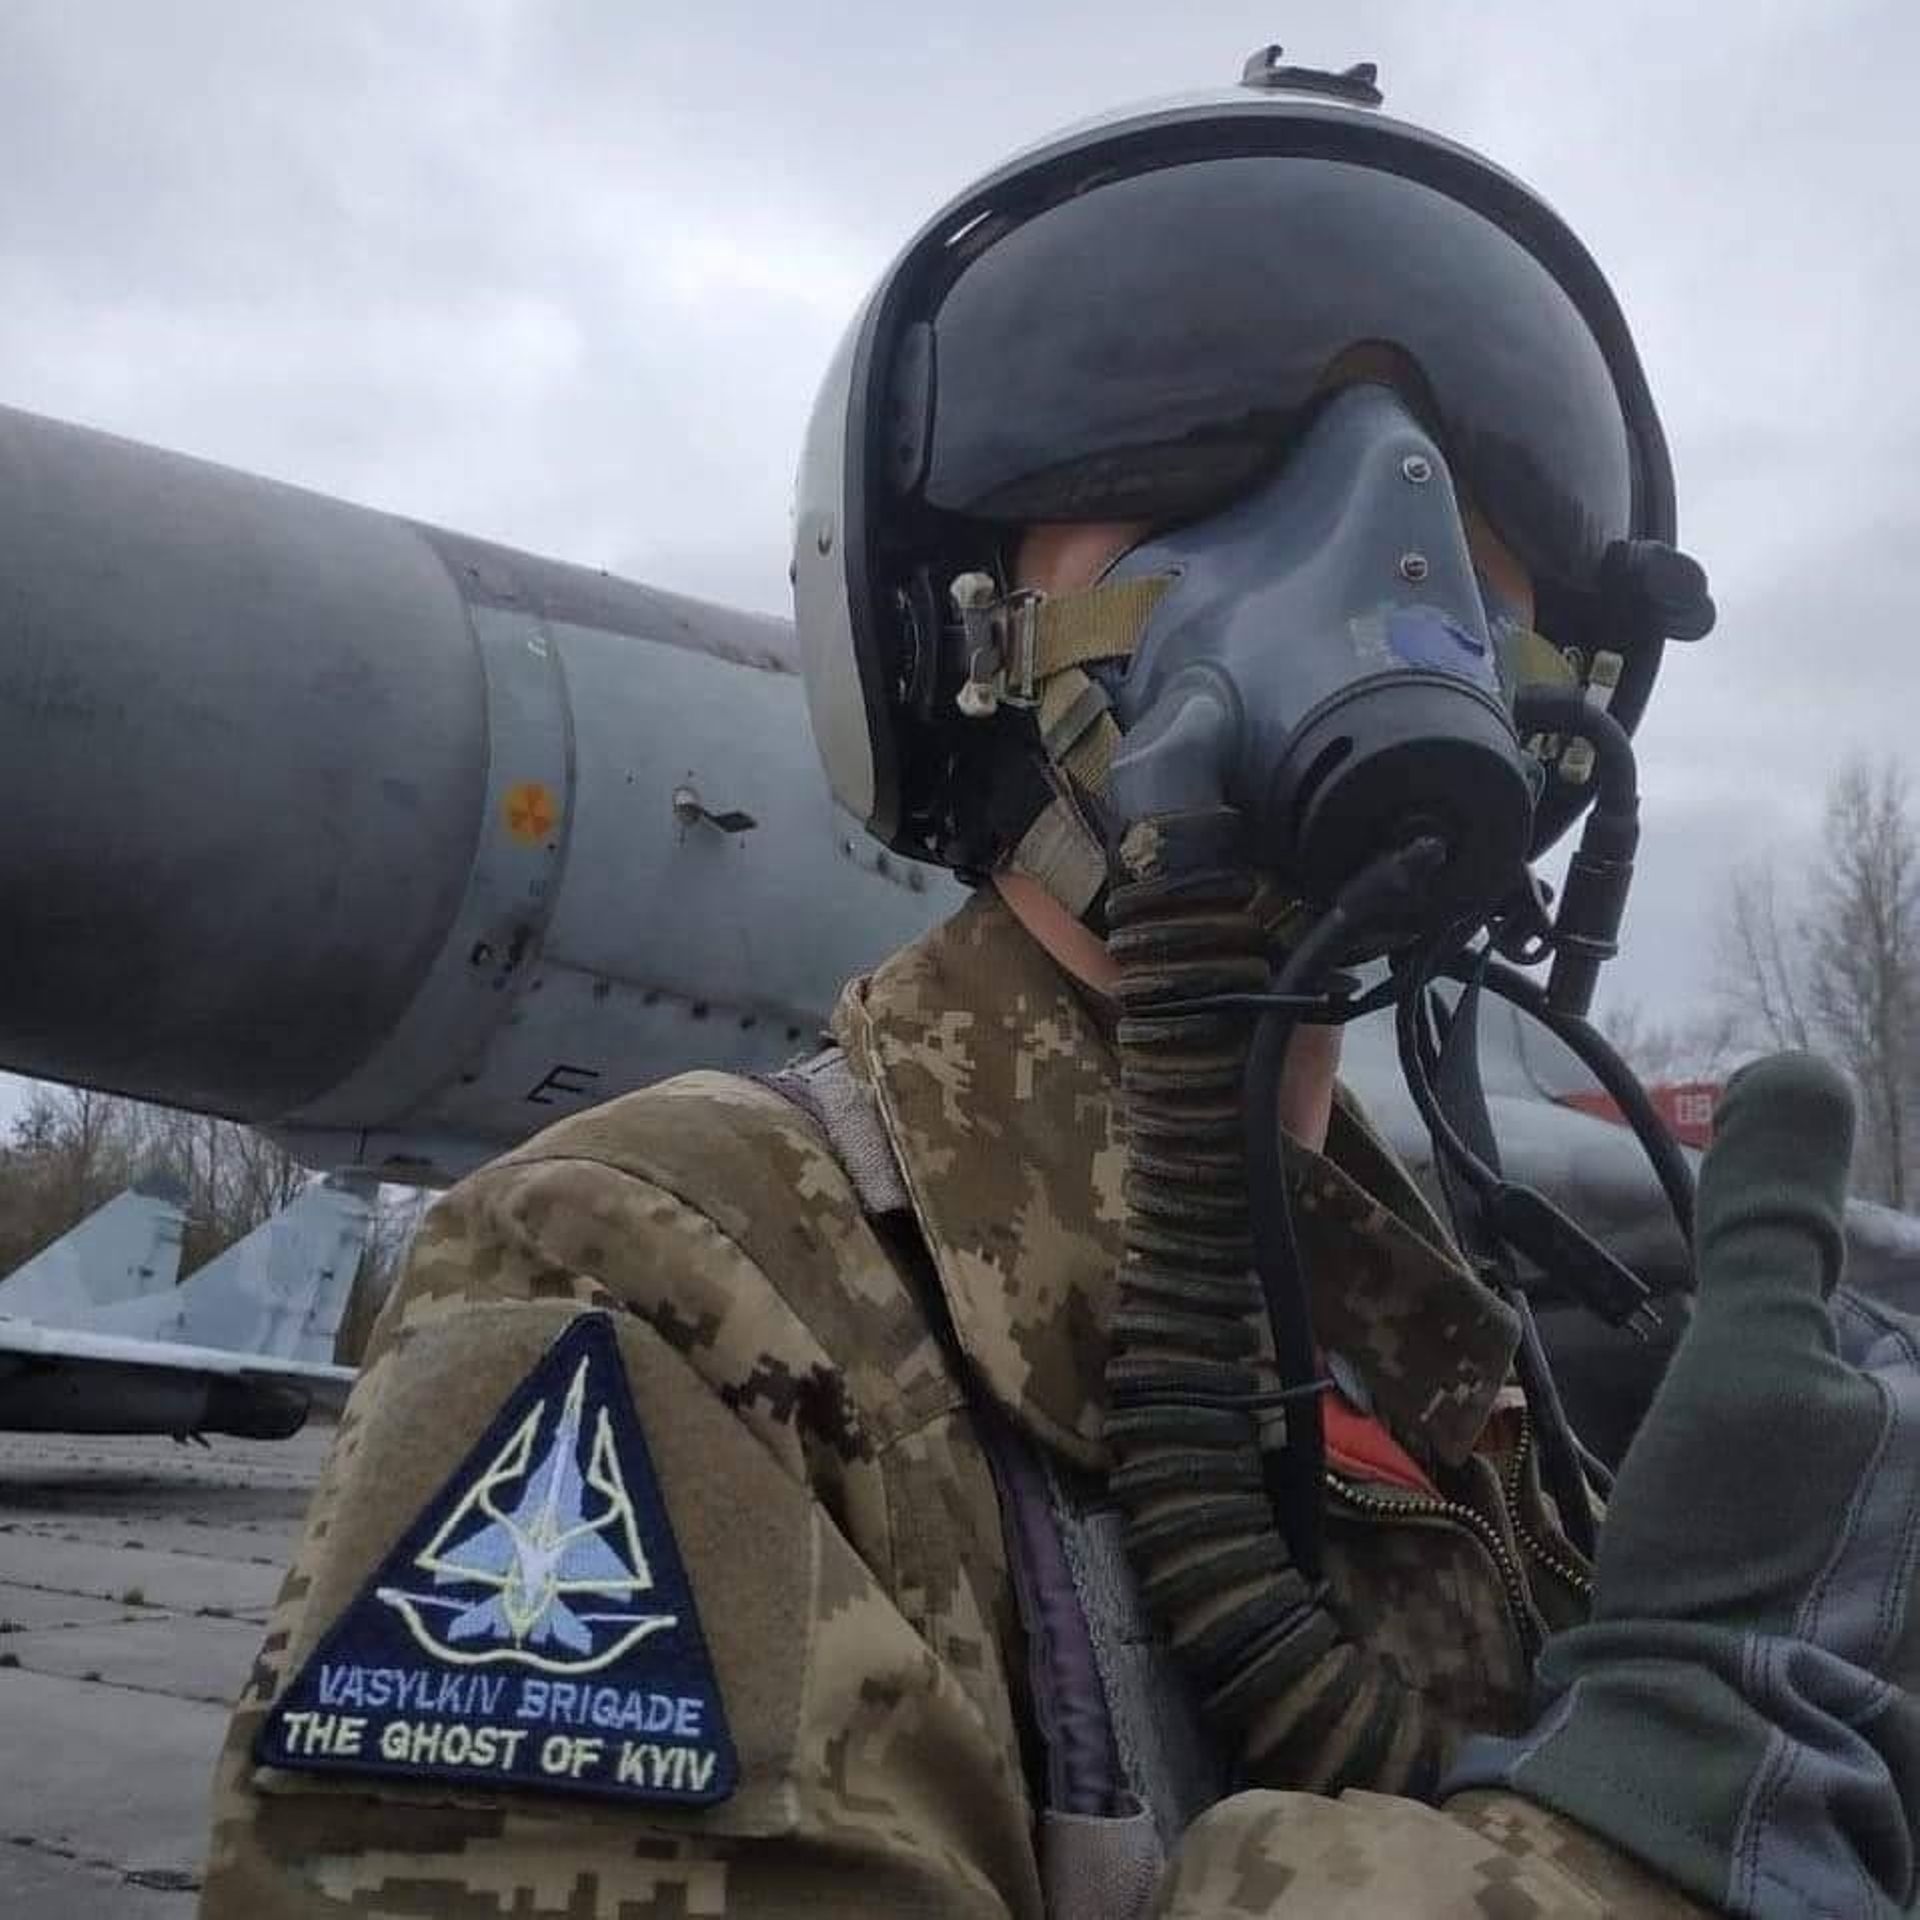 "Le fantôme de Kiev est vivant et incarne une image collective des pilotes hautement qualifiés de la brigade d'aviation tactique défendant avec succès Kiev et sa région", a déclaré le porte-parole de l'armée de l'air.